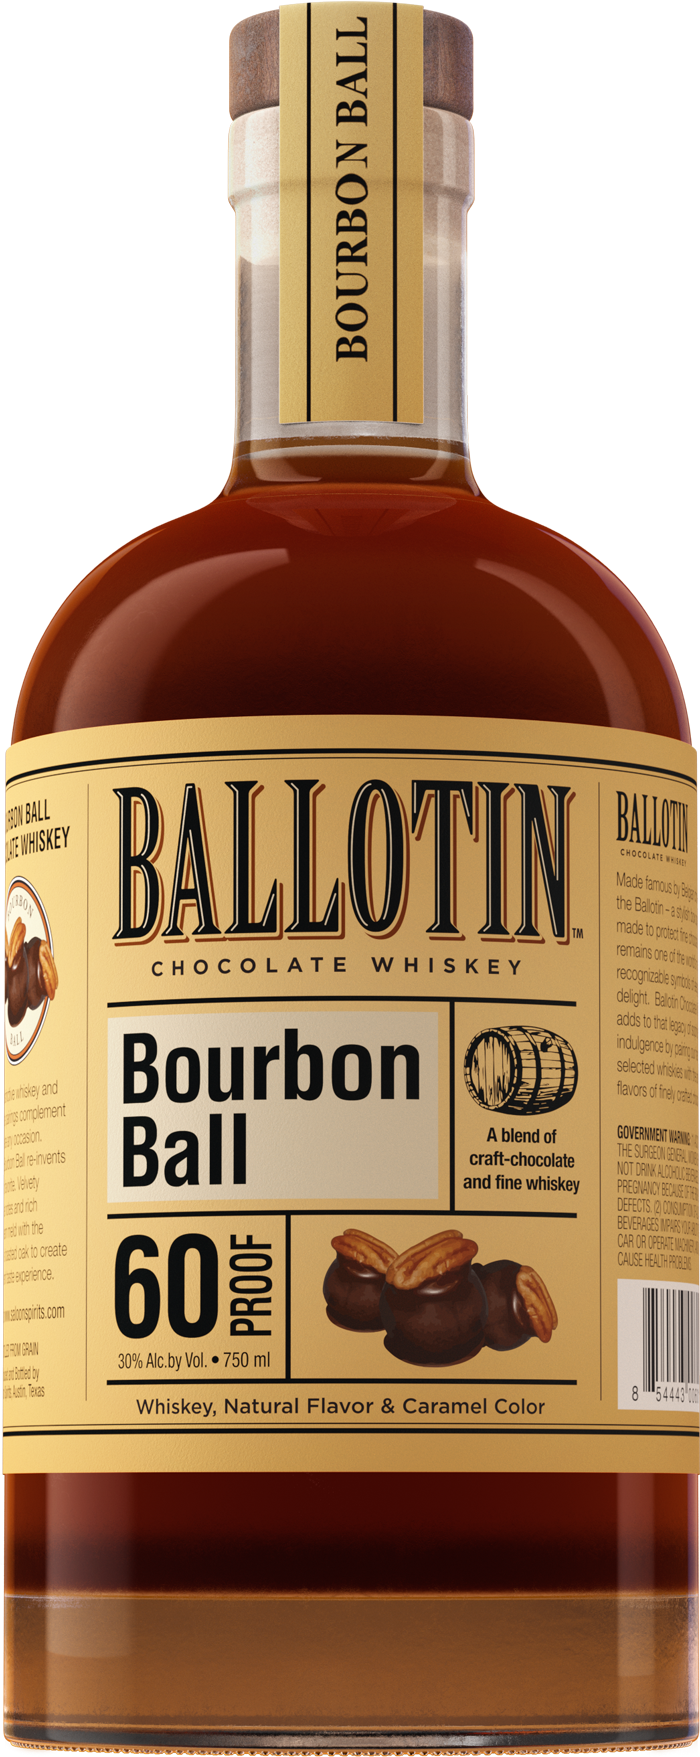 http://ballotinwhiskey.com/cdn/shop/files/Ballotin-Bourbon-Ball-750ml-Bottle-Image.png?v=1692041856